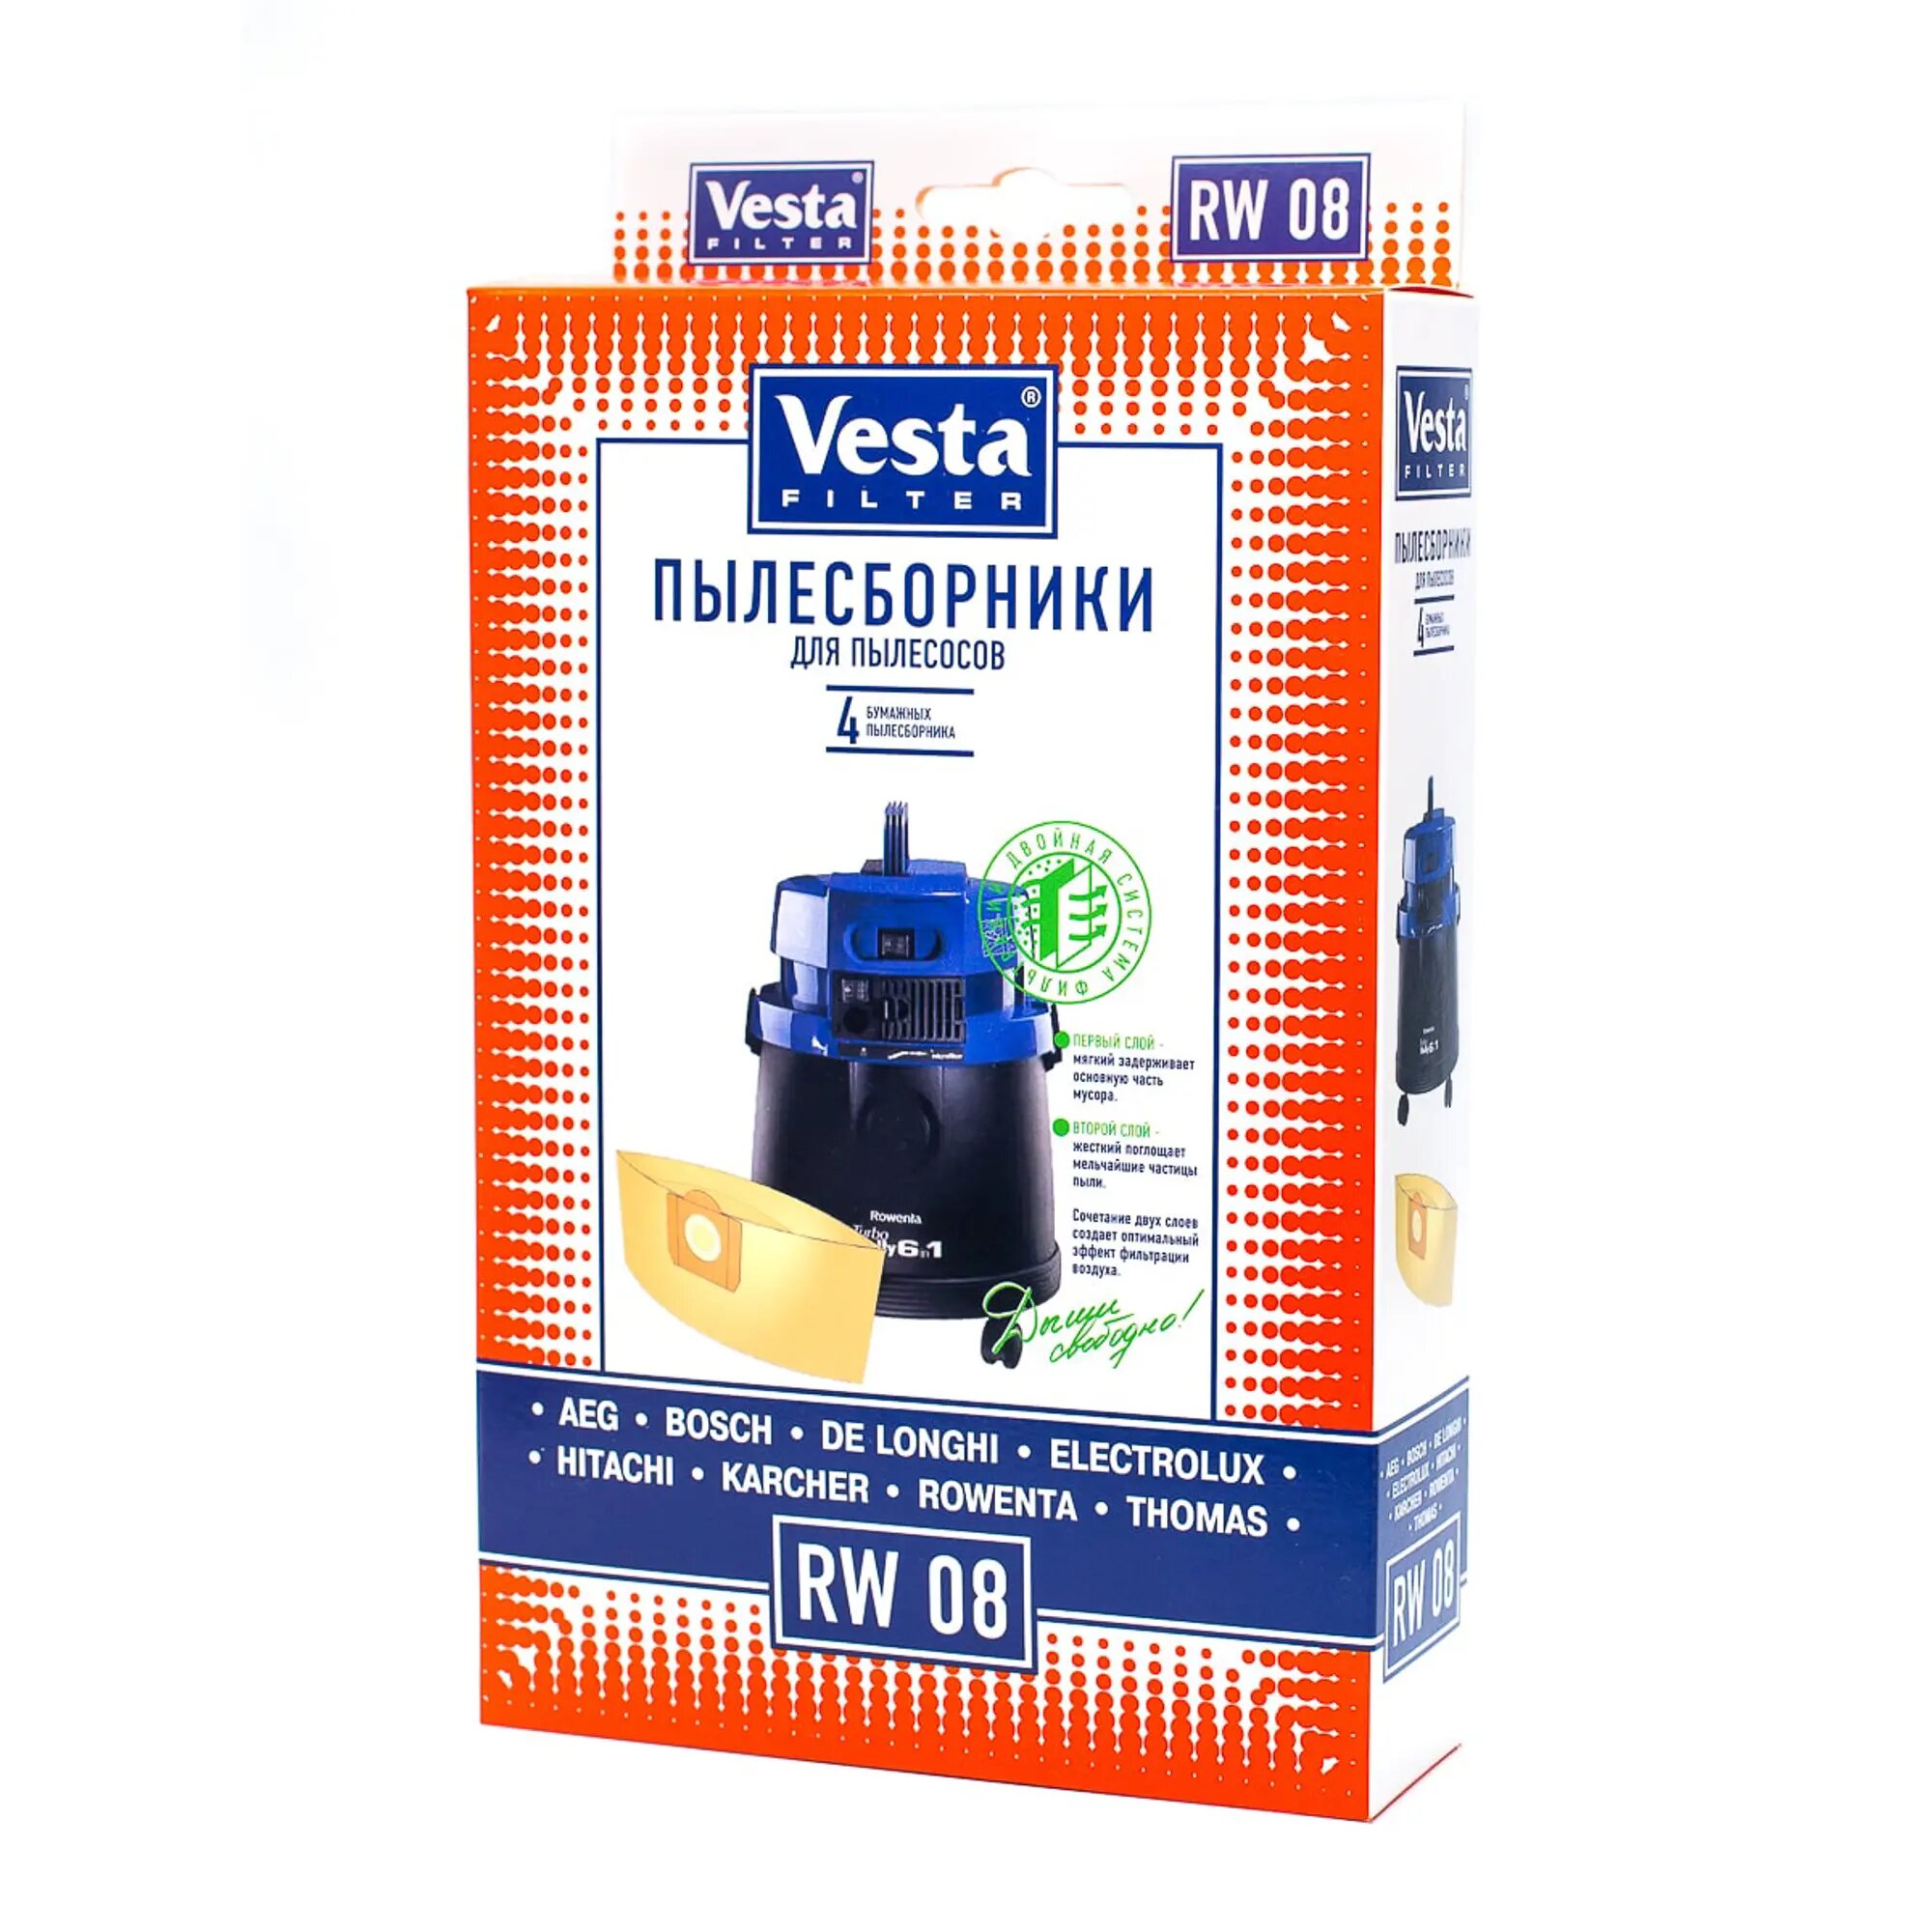 Vesta filter Бумажные пылесборники RW 08, бежевый, 4 шт. - фото №15